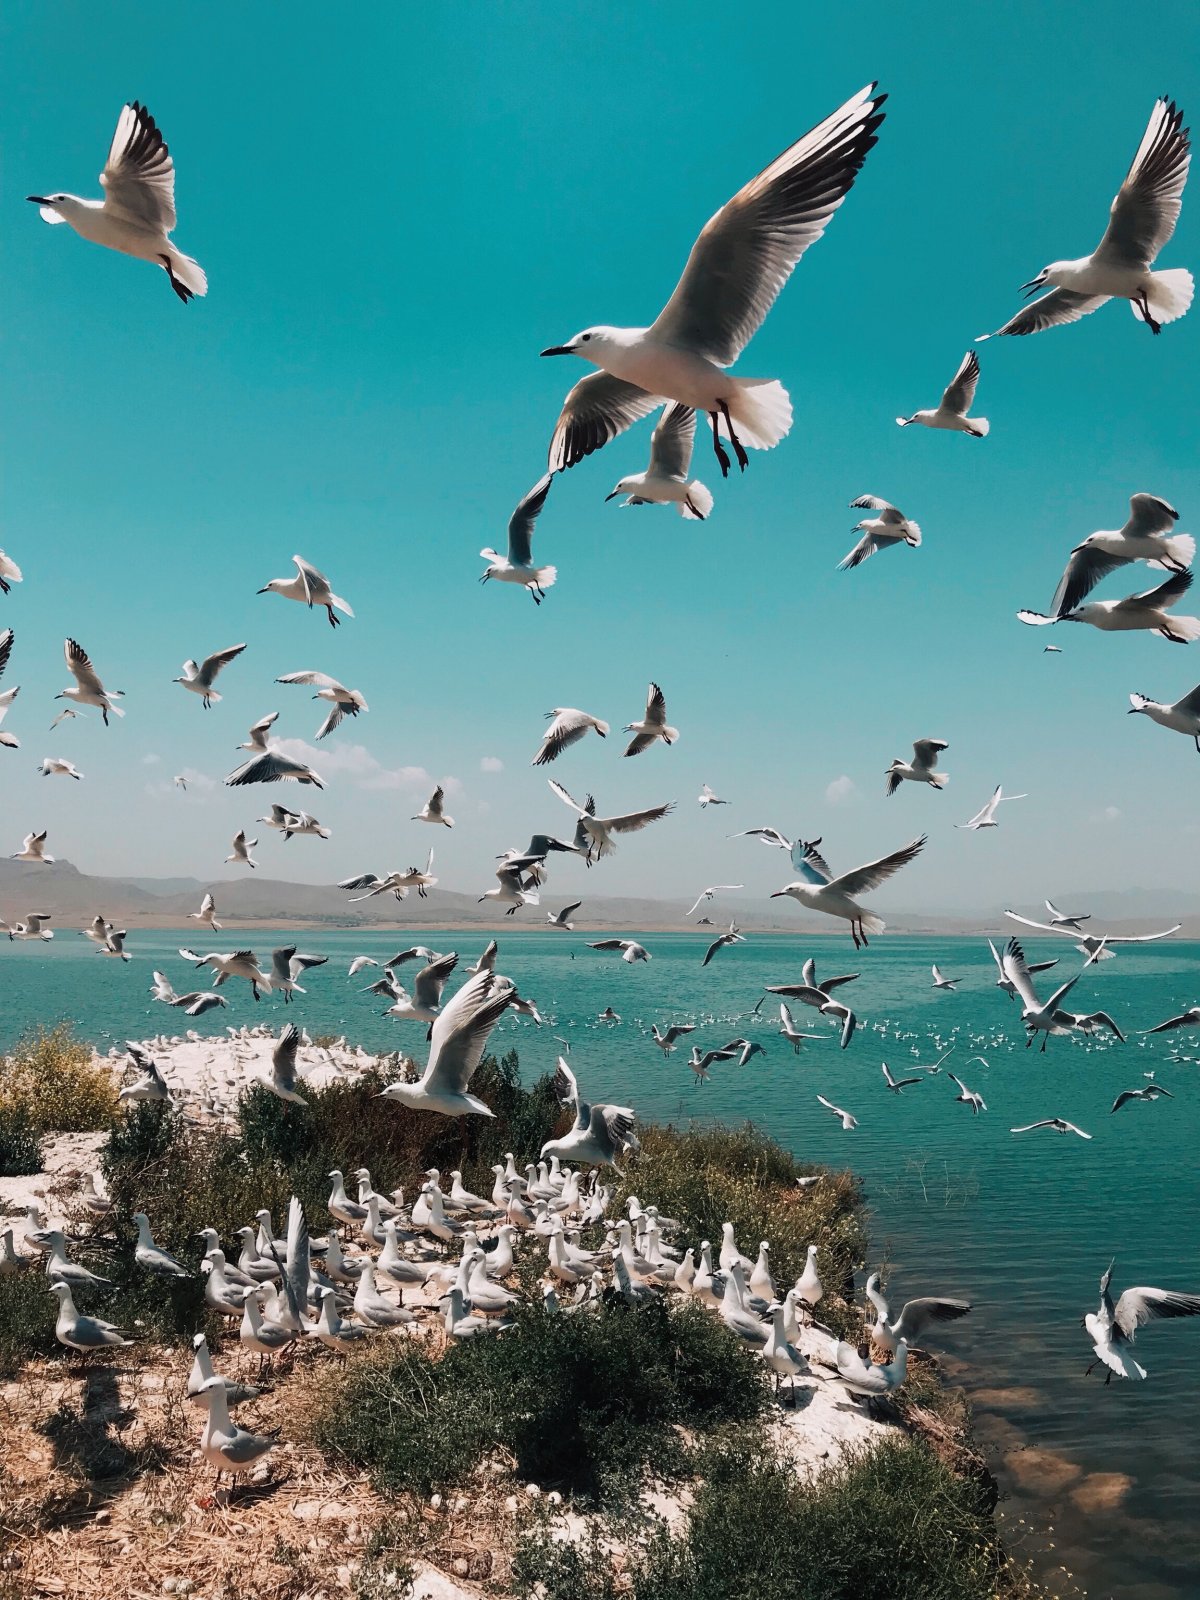 一群海鸥在天空中飞翔图片,高清图片